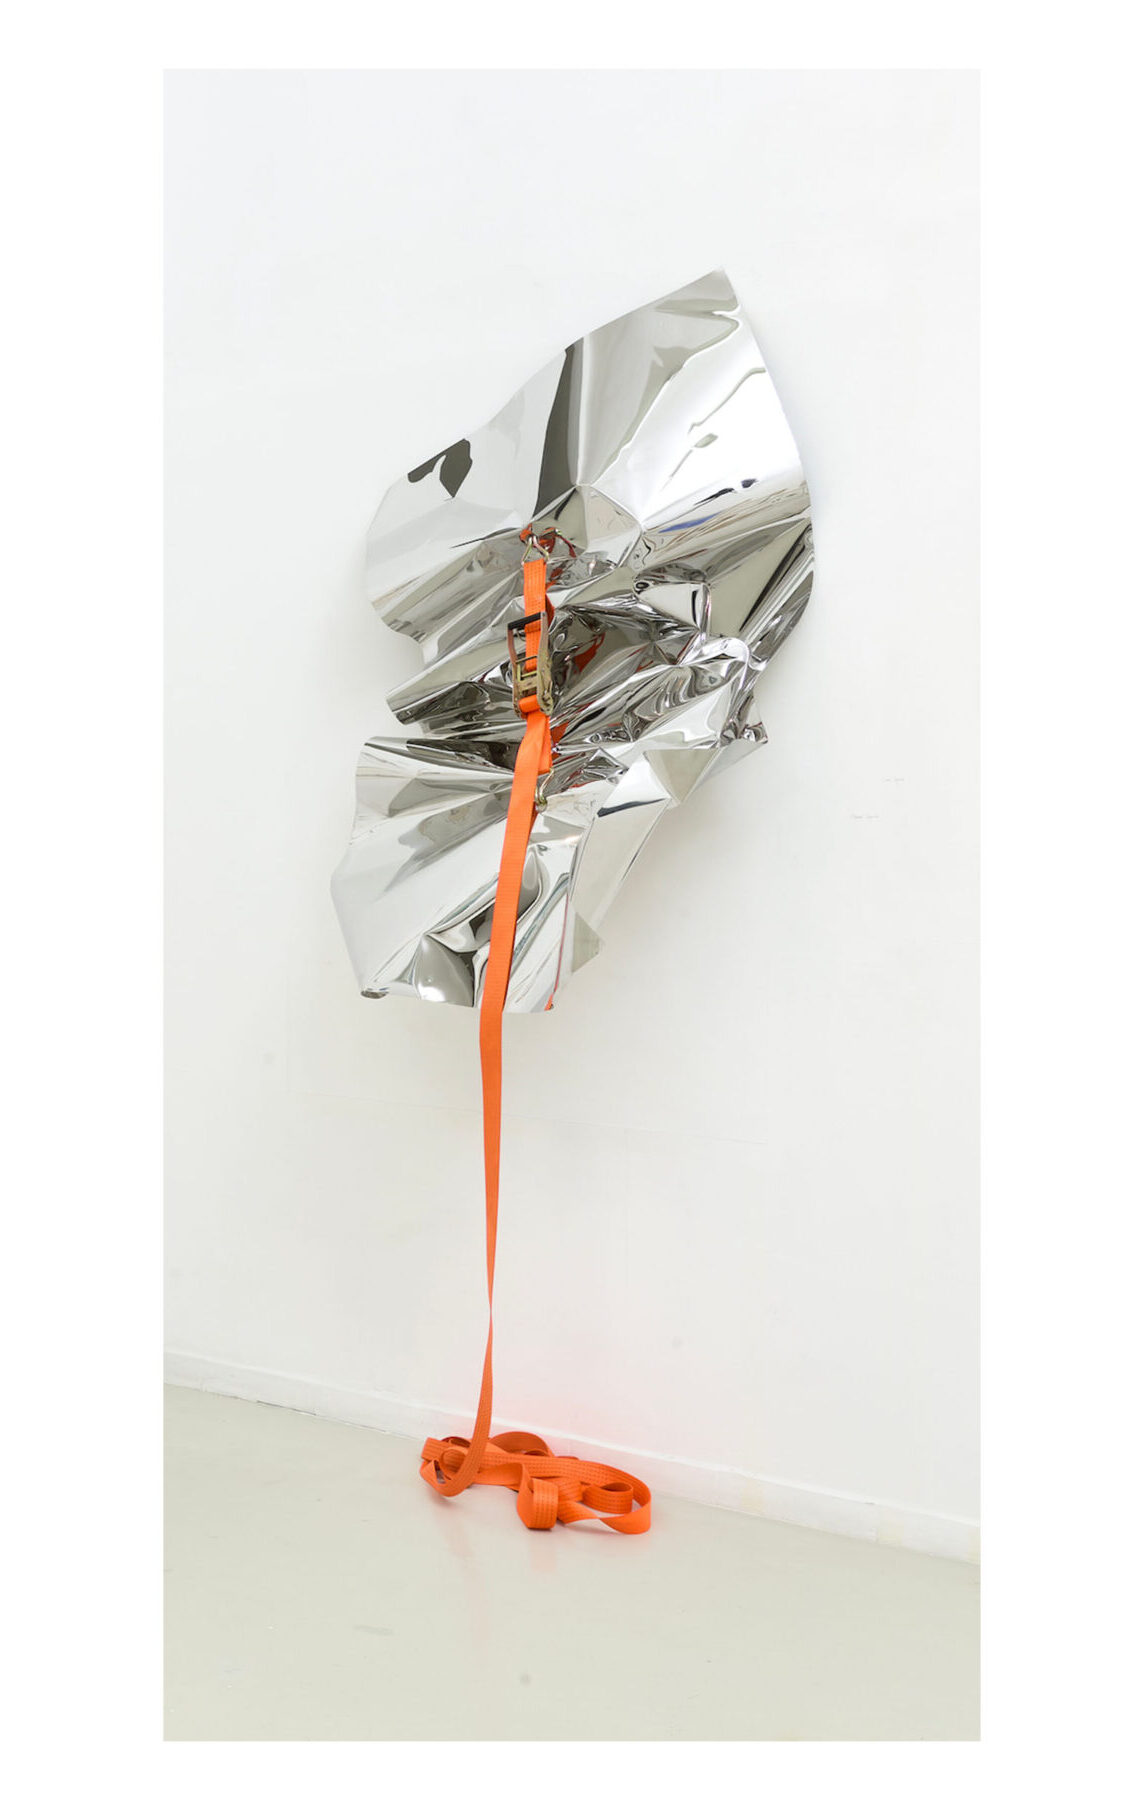 Florian Pugnaire Tôle sanglée, 2019 acier inoxydable, sangle. 168 x 96 x 68 cm